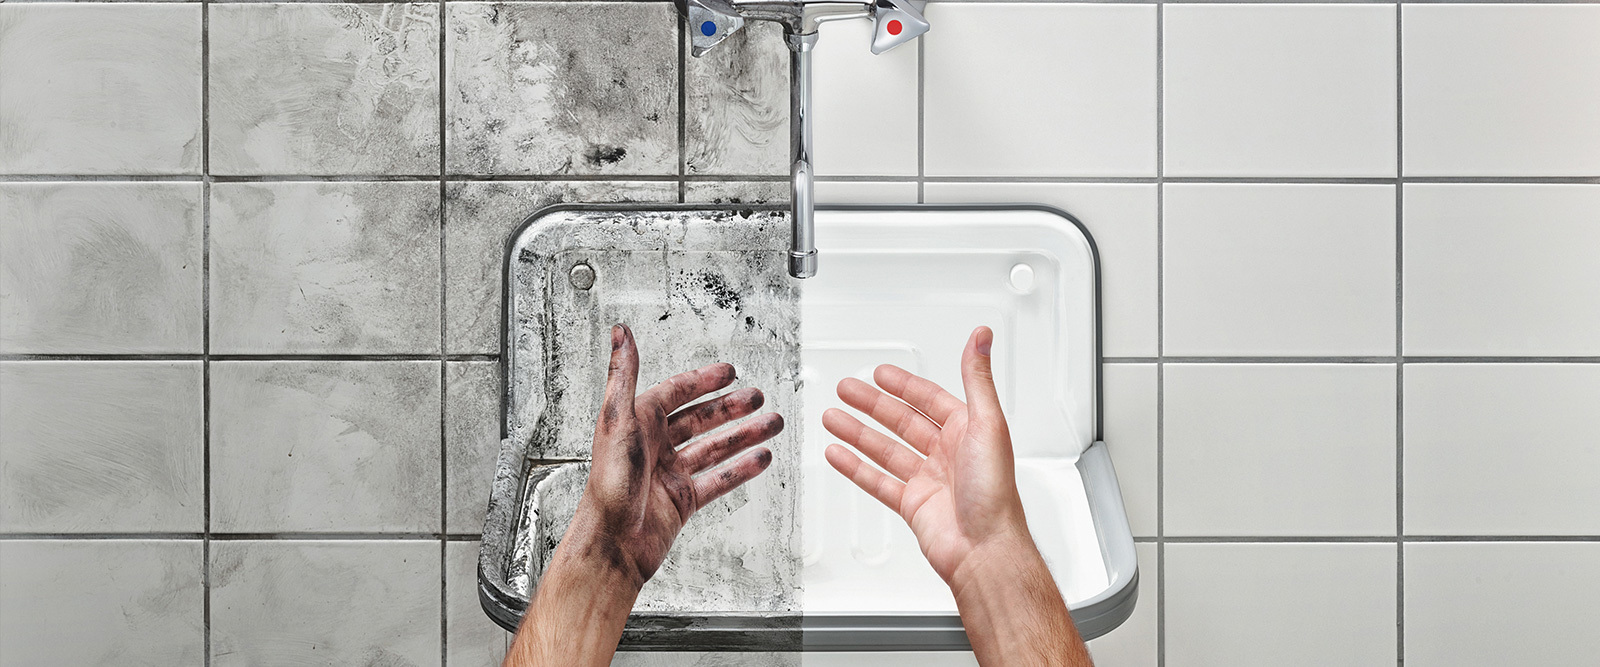 mycie rąk nad umywalką